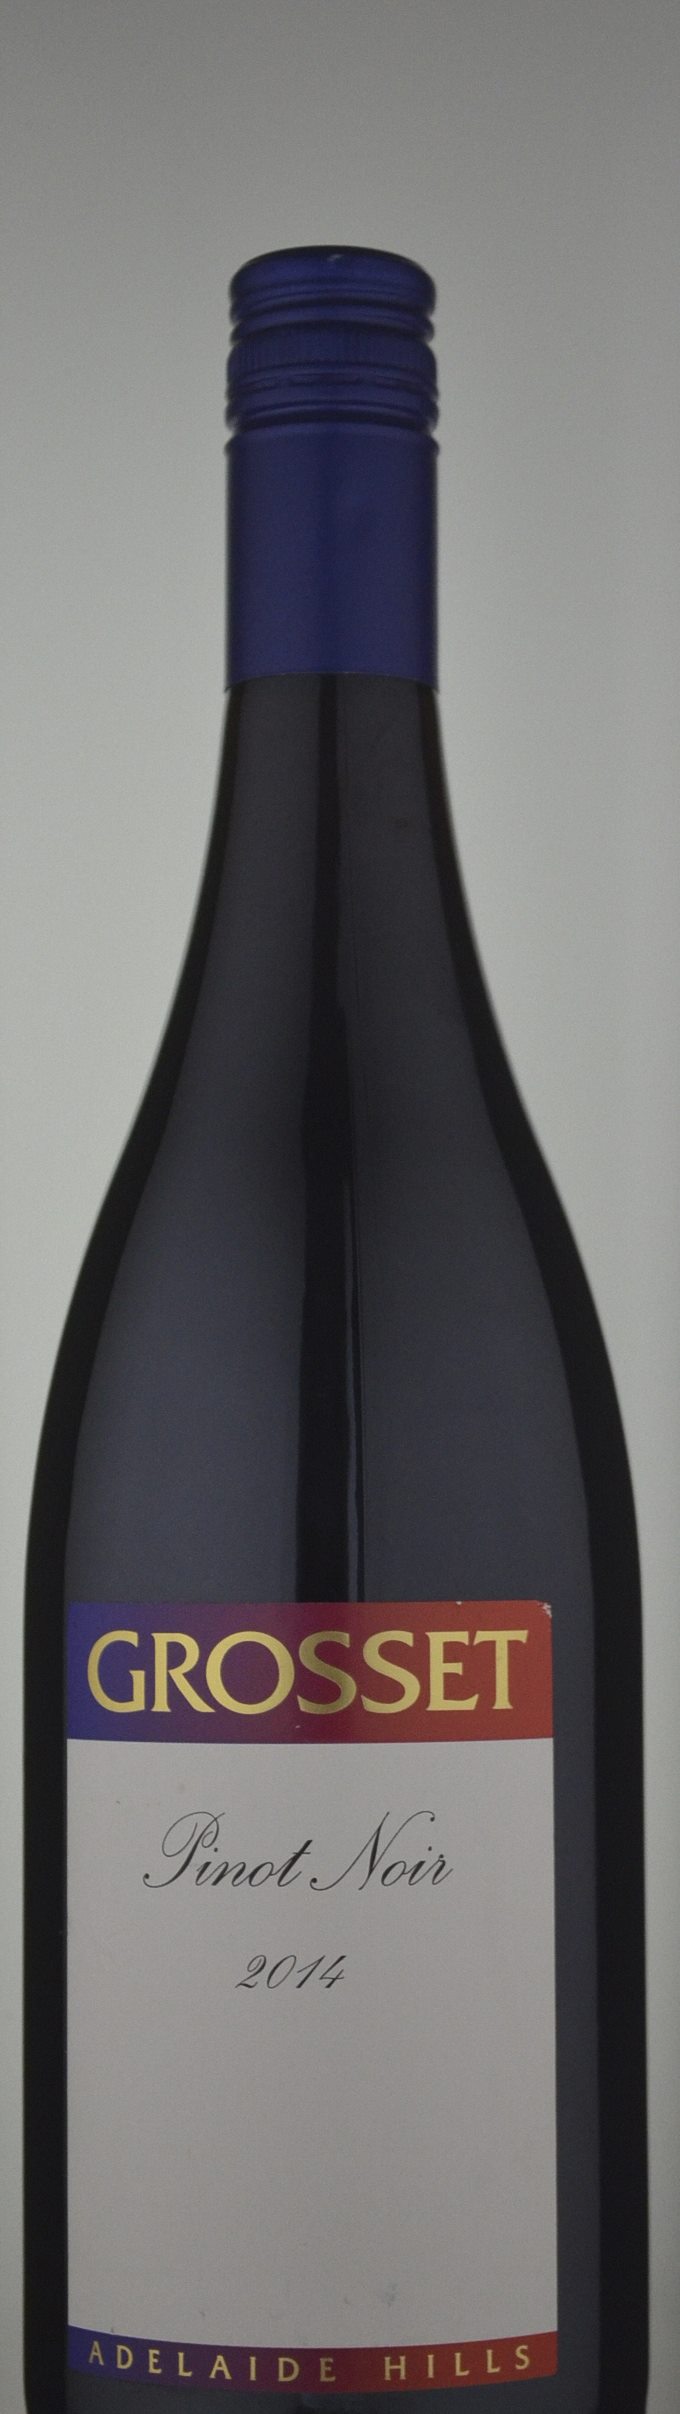 Grosset Pinot Noir 2014